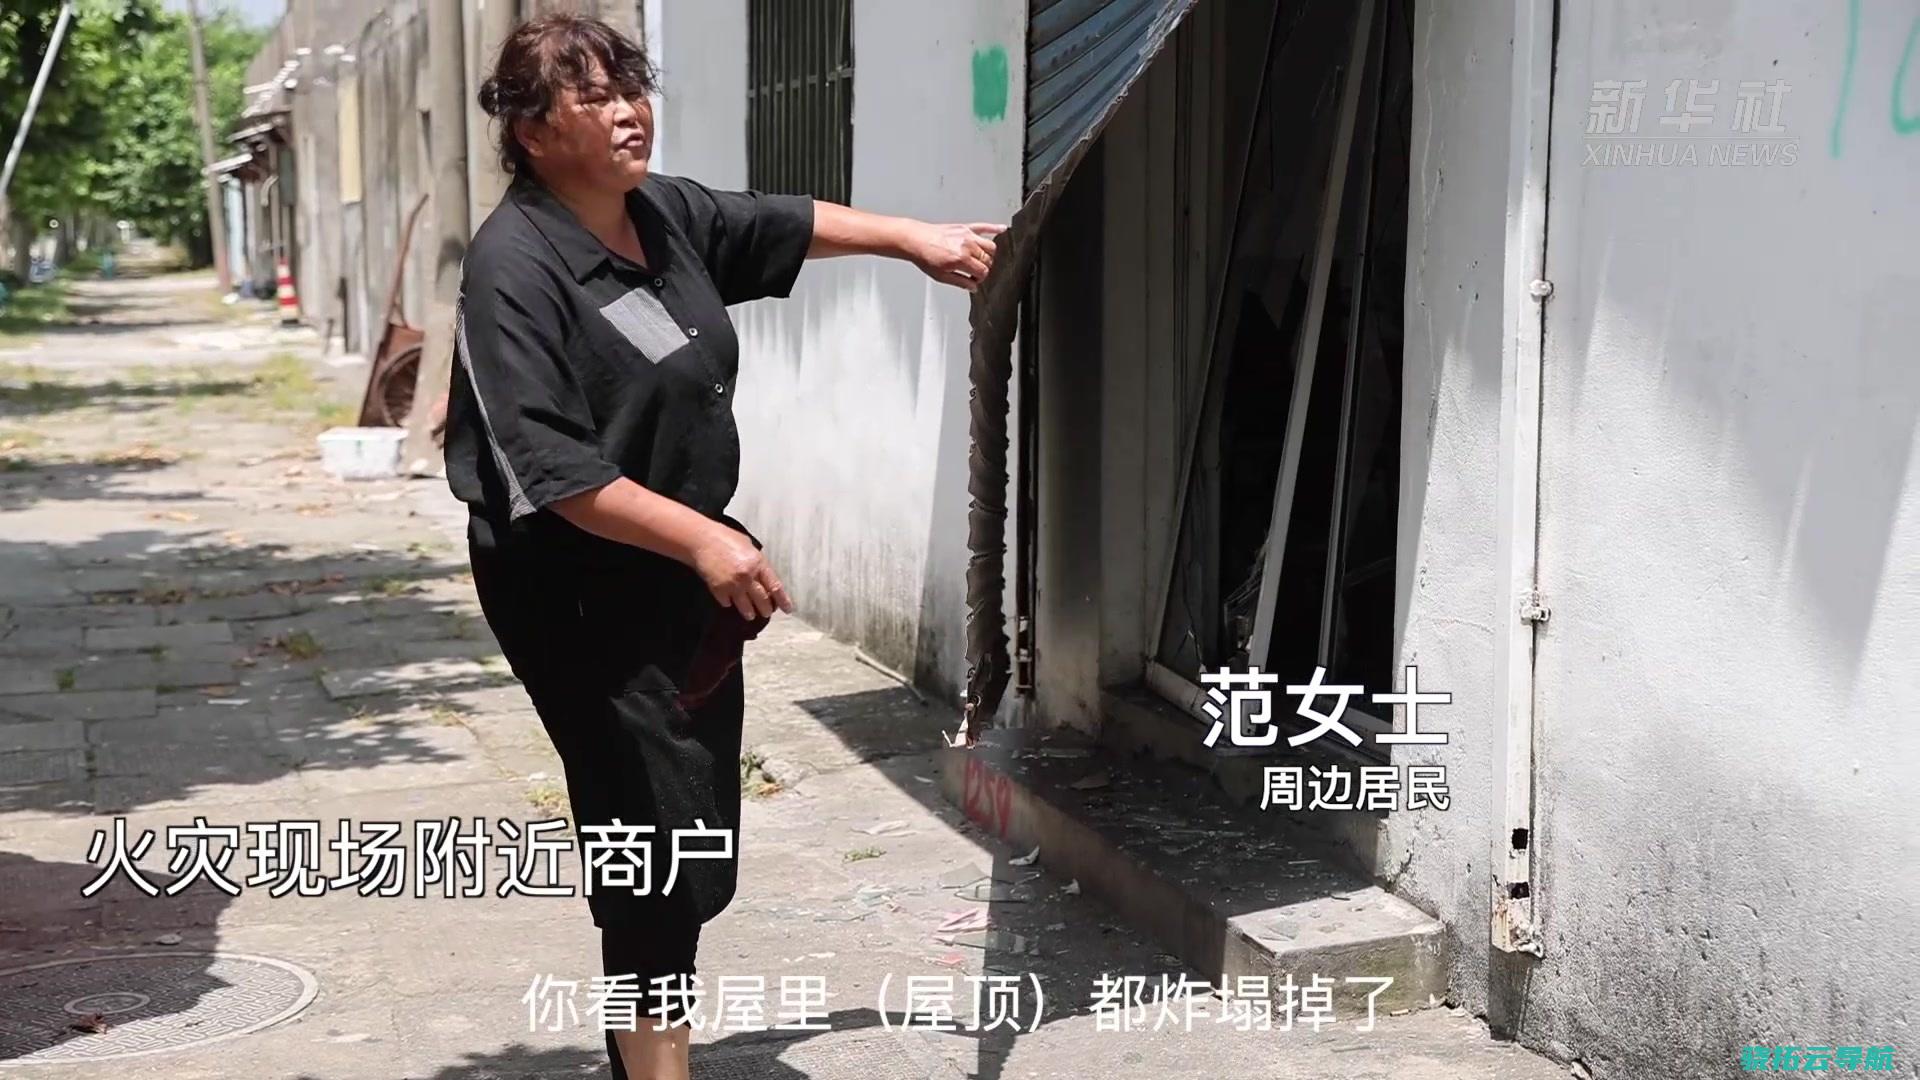 上海石化火灾状况通报 意外形成1死1重伤